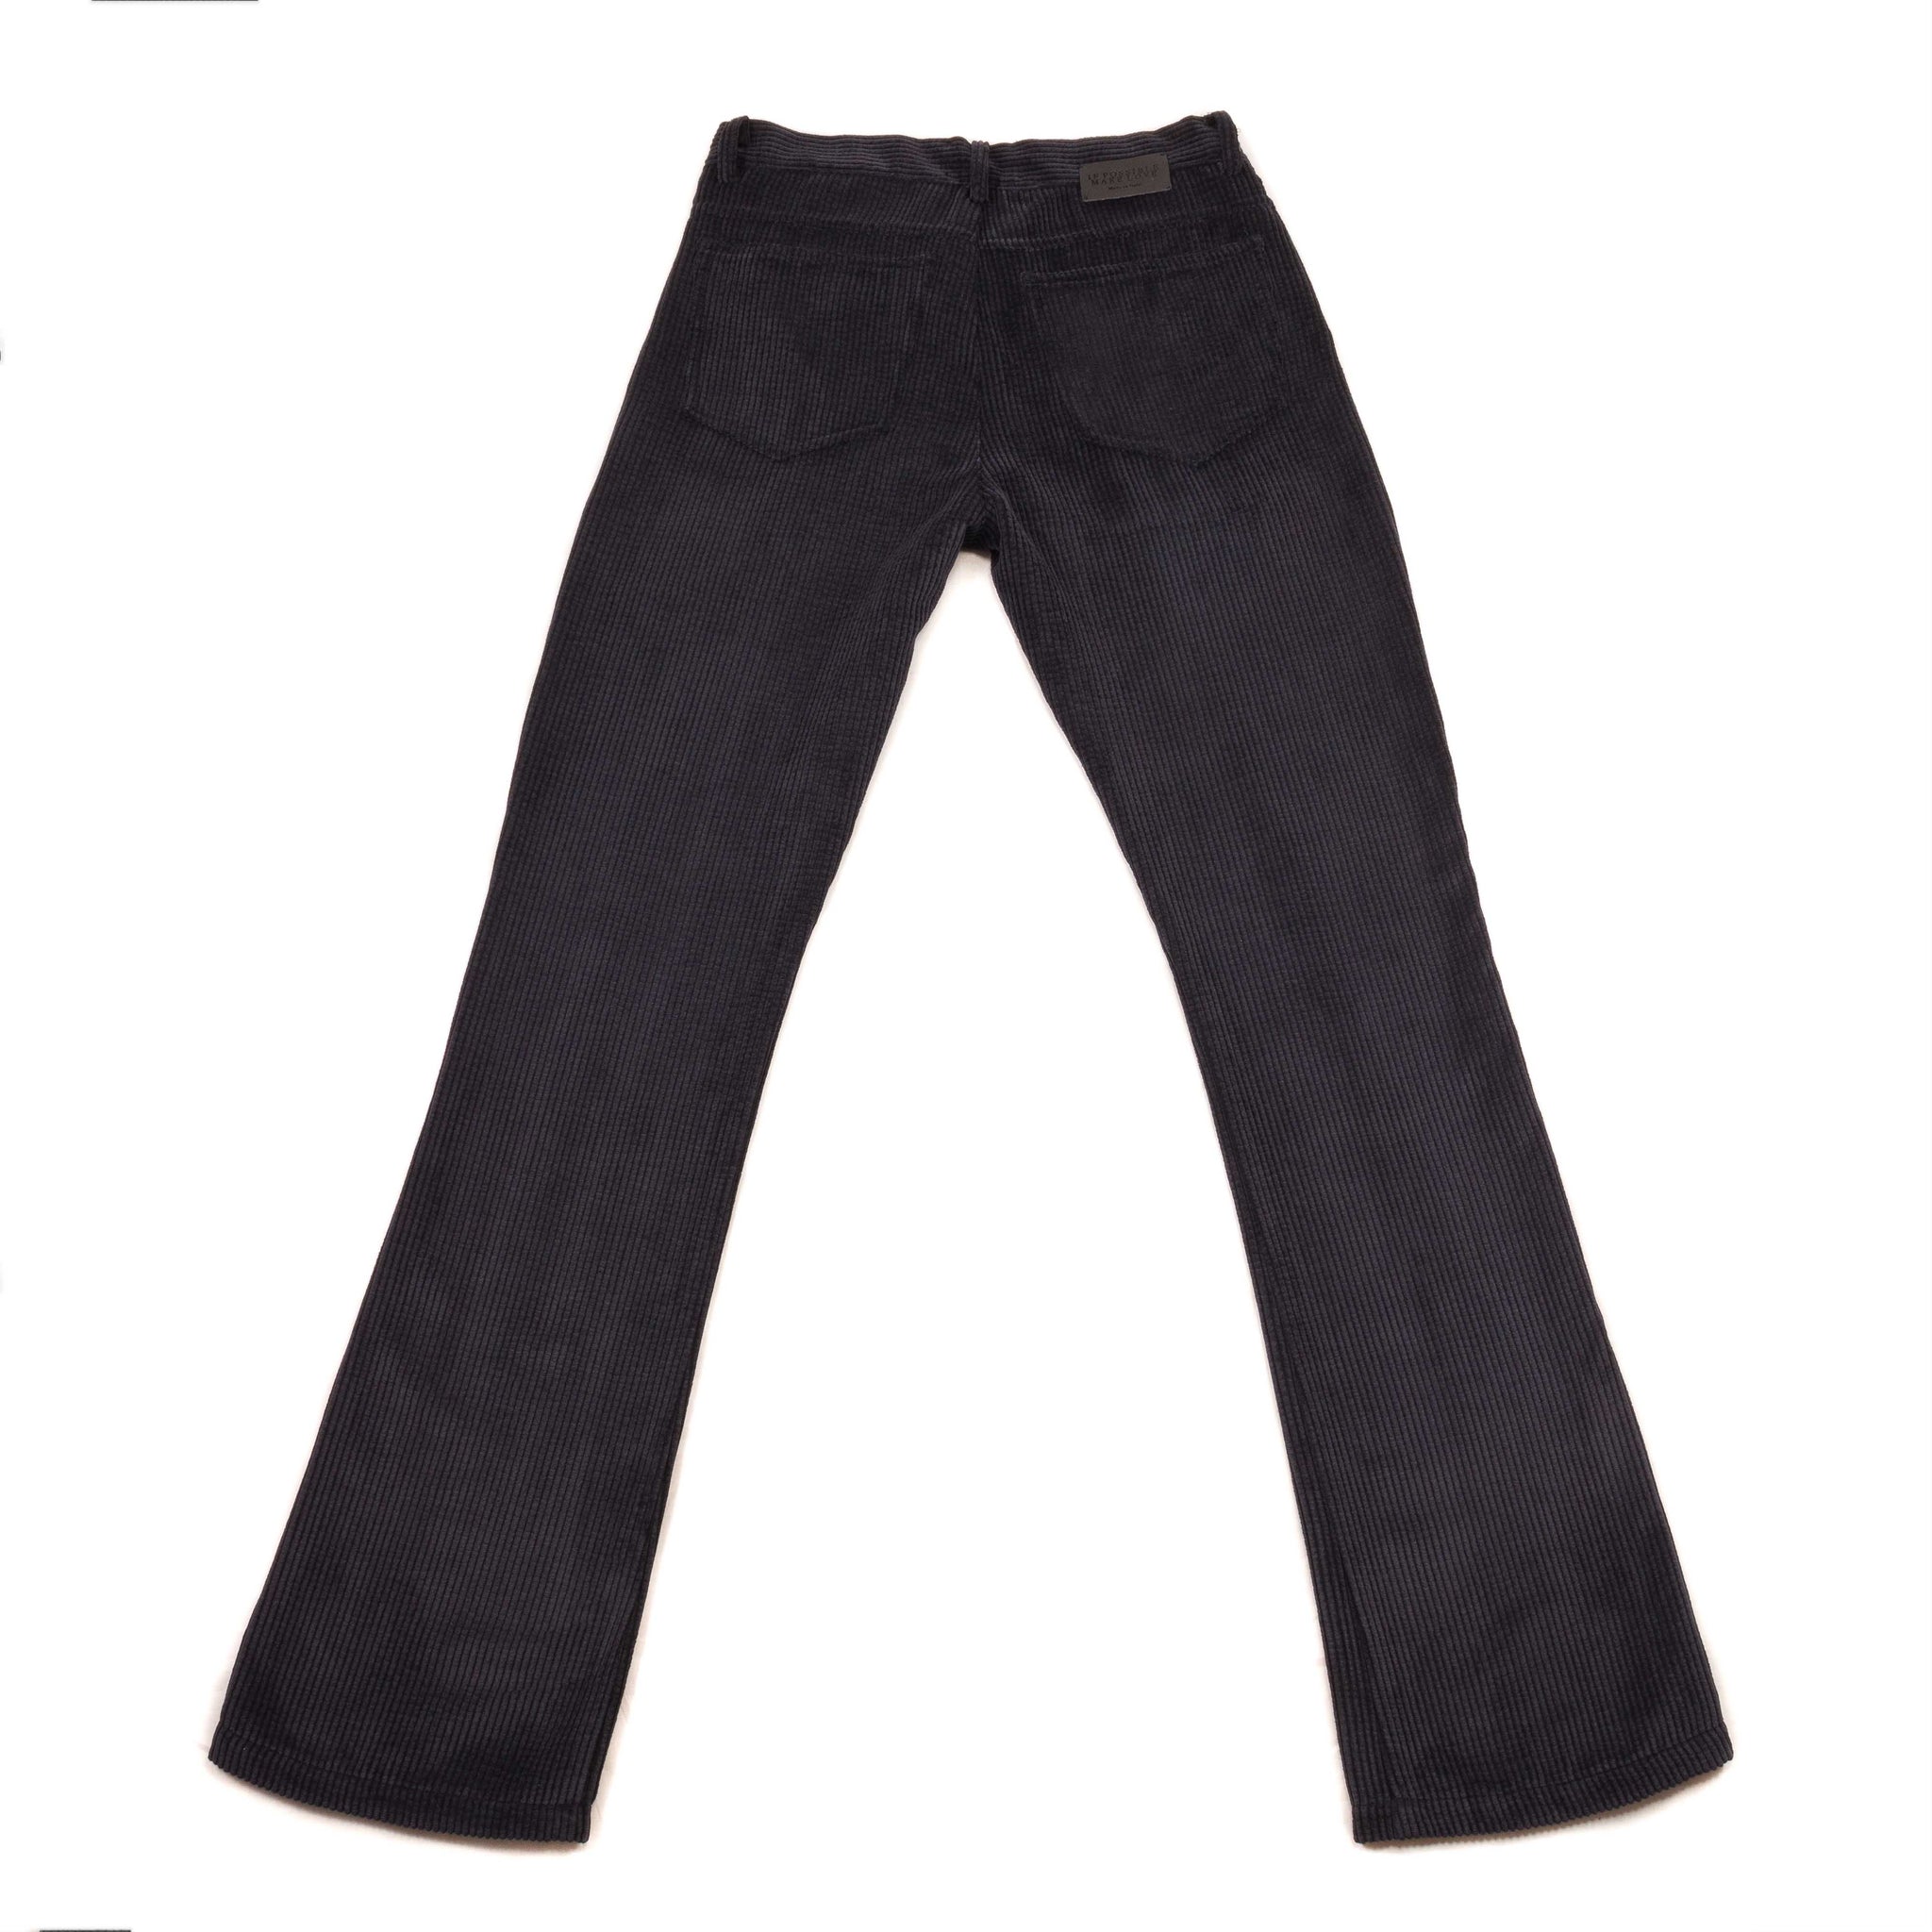 Velvet black pants